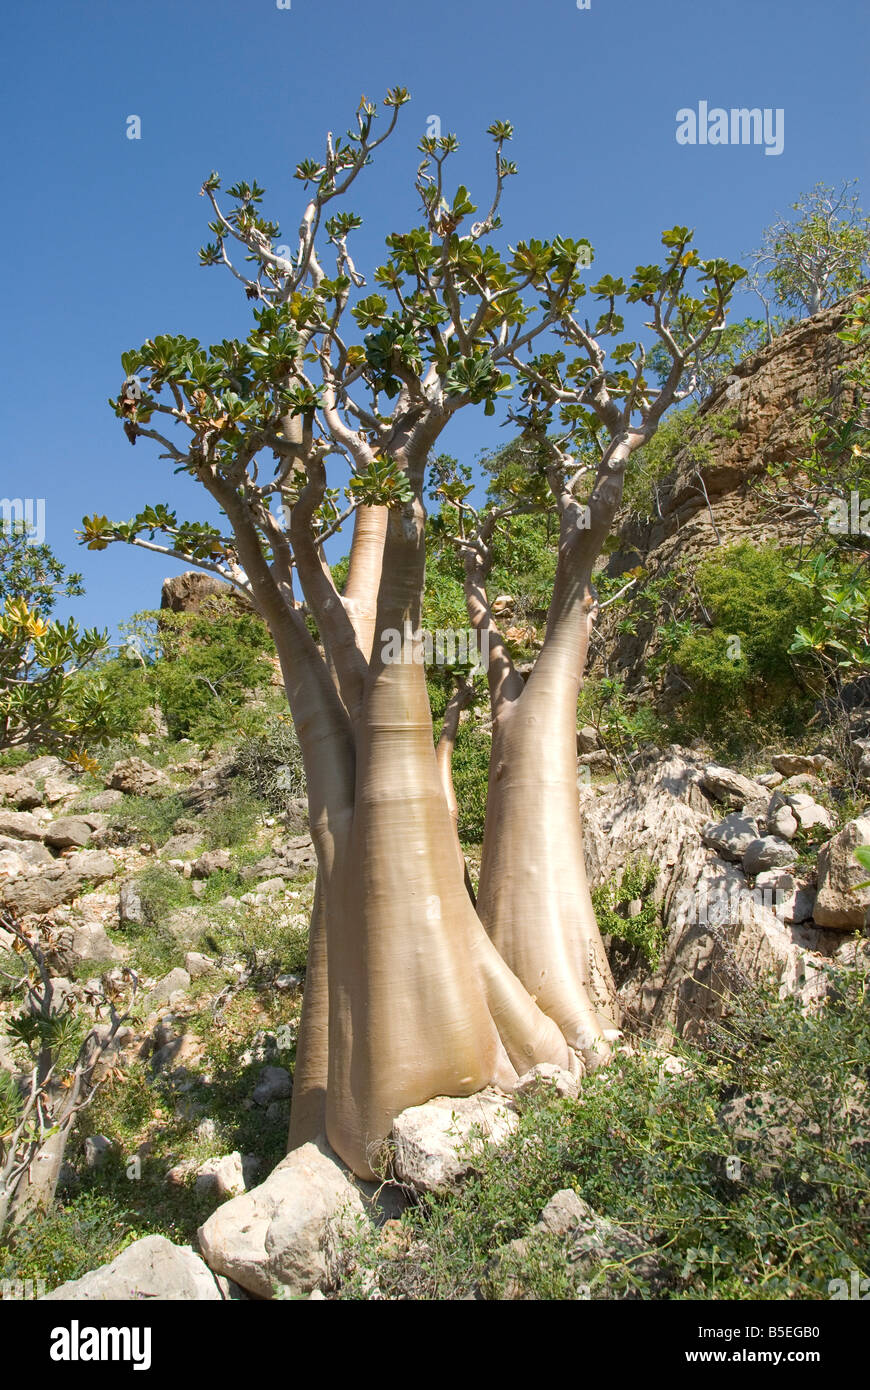 Arbre bouteille d'Adenium obesum rose du désert endémique à l'île près de Hadibu, île de Socotra, au Yémen, au Moyen-Orient Banque D'Images